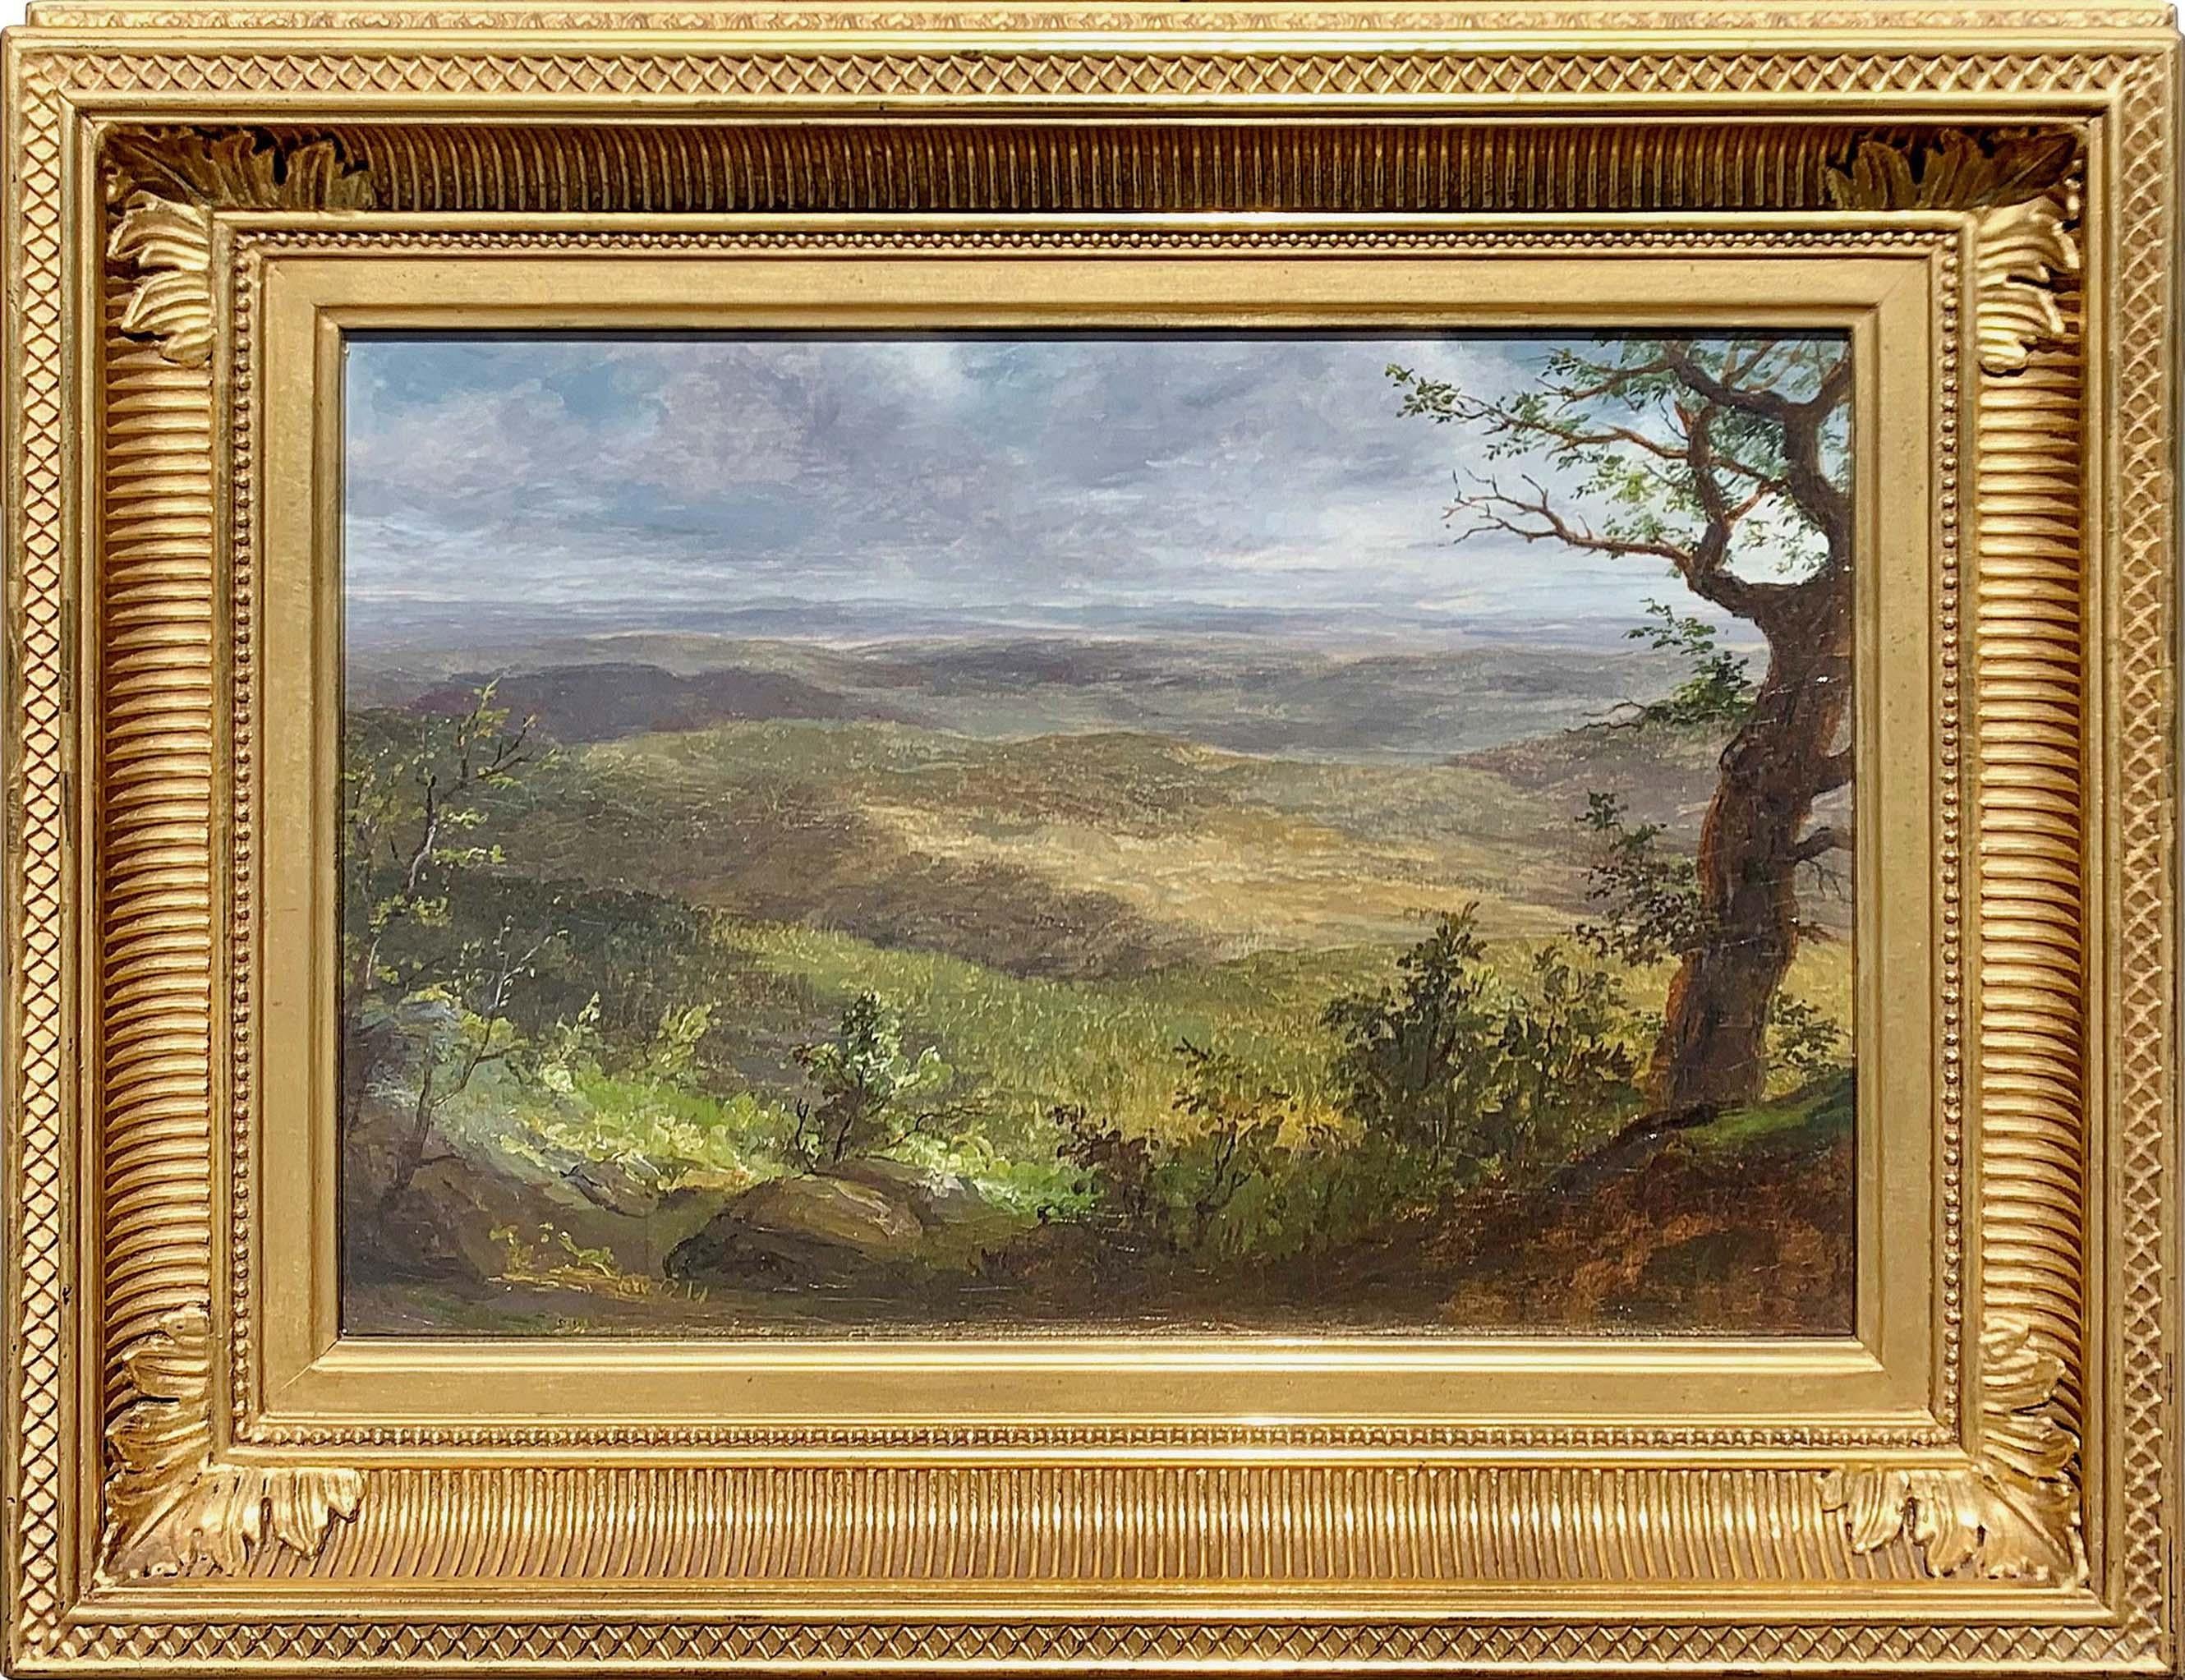 Shawangunk Mountains [View from top of Granit Road Looking Southeast] von Hudson River School Künstler Lemuel Maynard Wiles (1826-1905) ist Öl auf Leinwand auf Karton montiert und misst 10 x 15 Zoll. Das Gemälde ist verso signiert und mit der